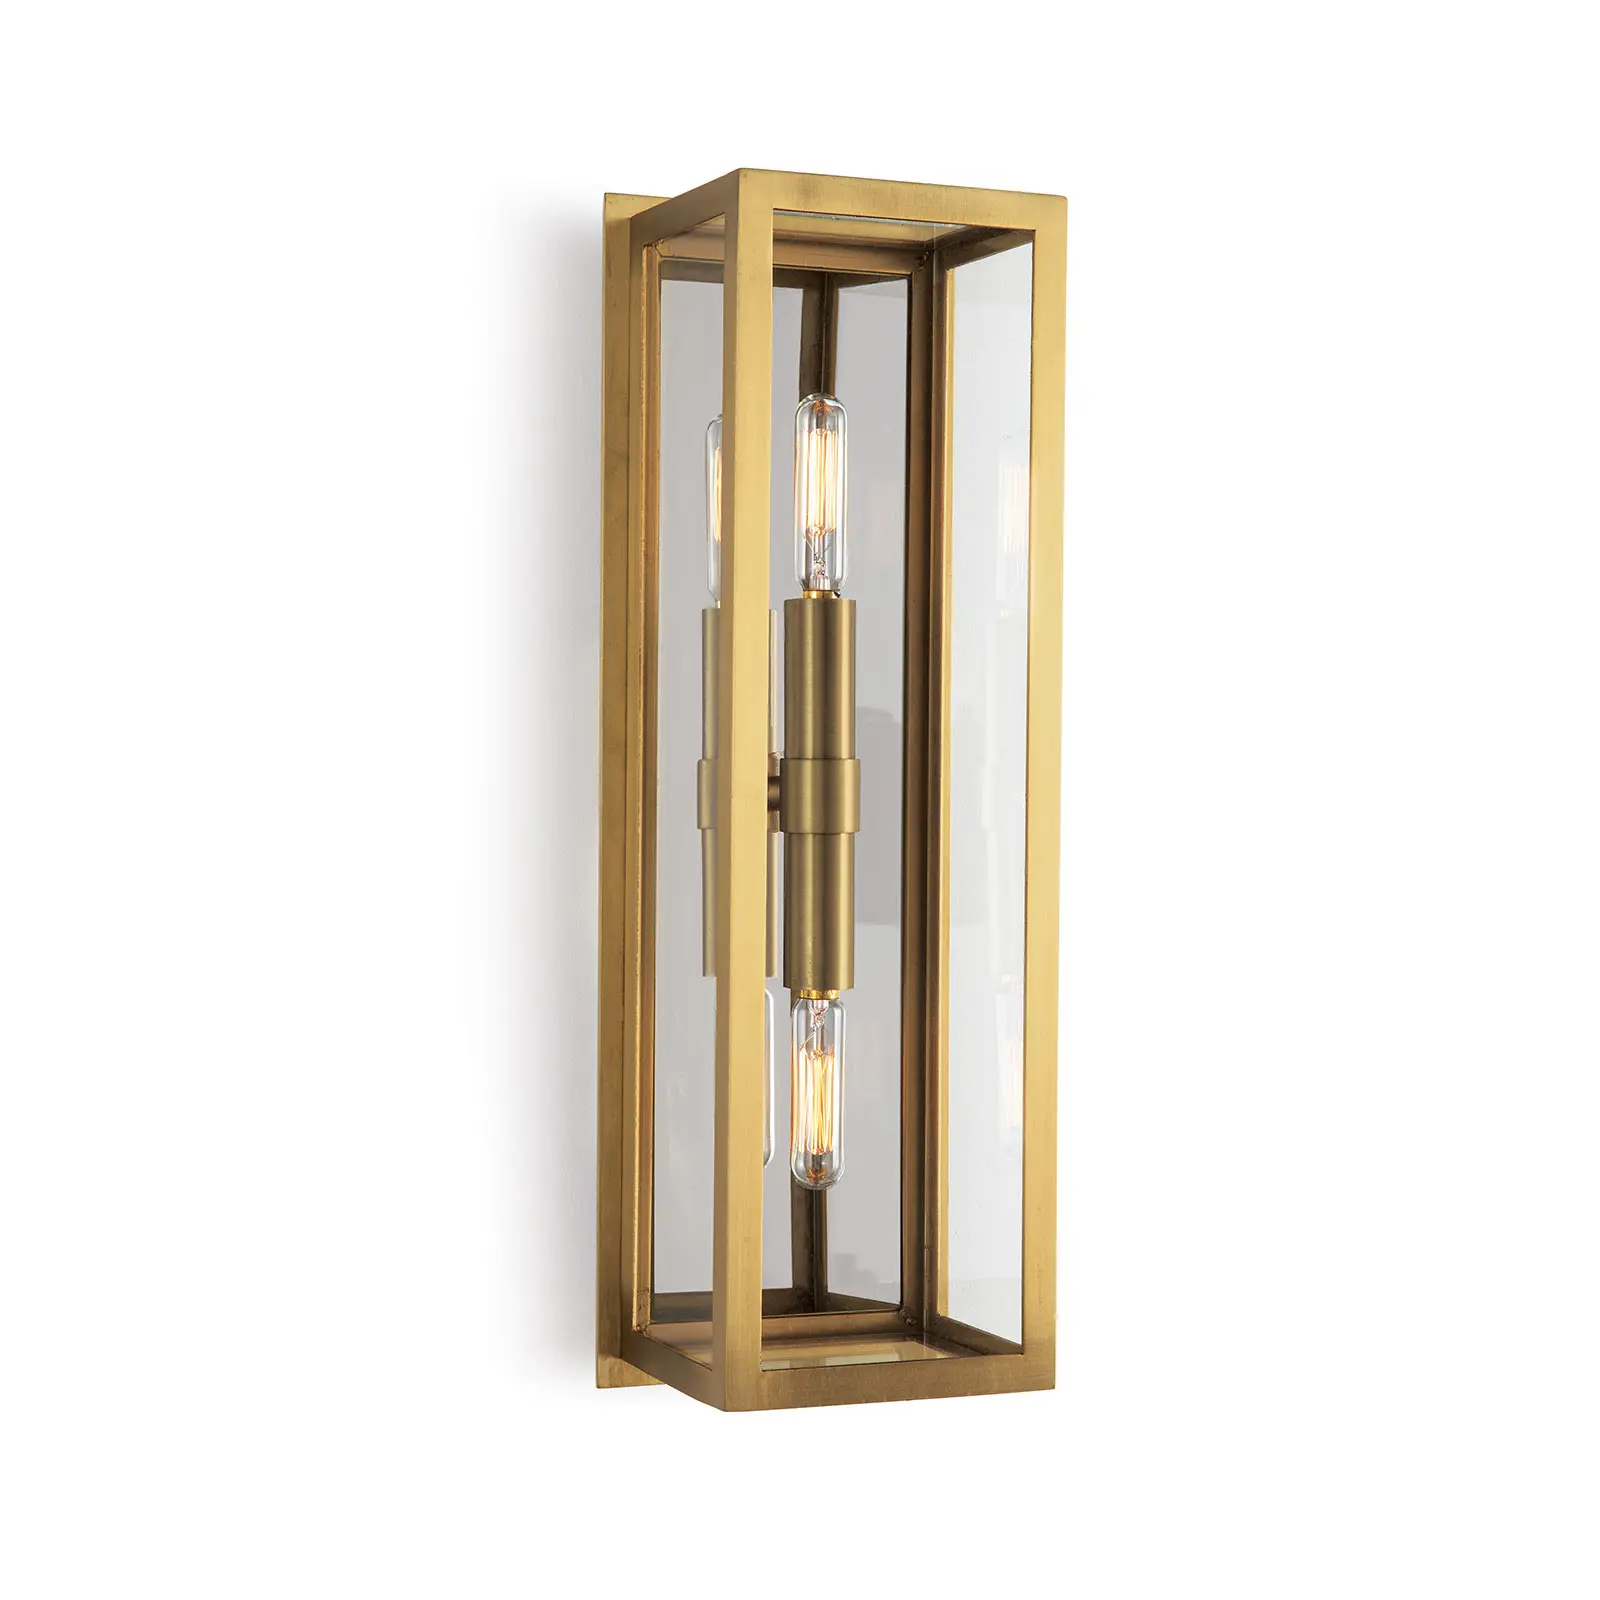 Preisgünstiges wasserdichtes goldenes Glas für den Außenbereich Wand-Lichtschachtel Licht Gartenschande